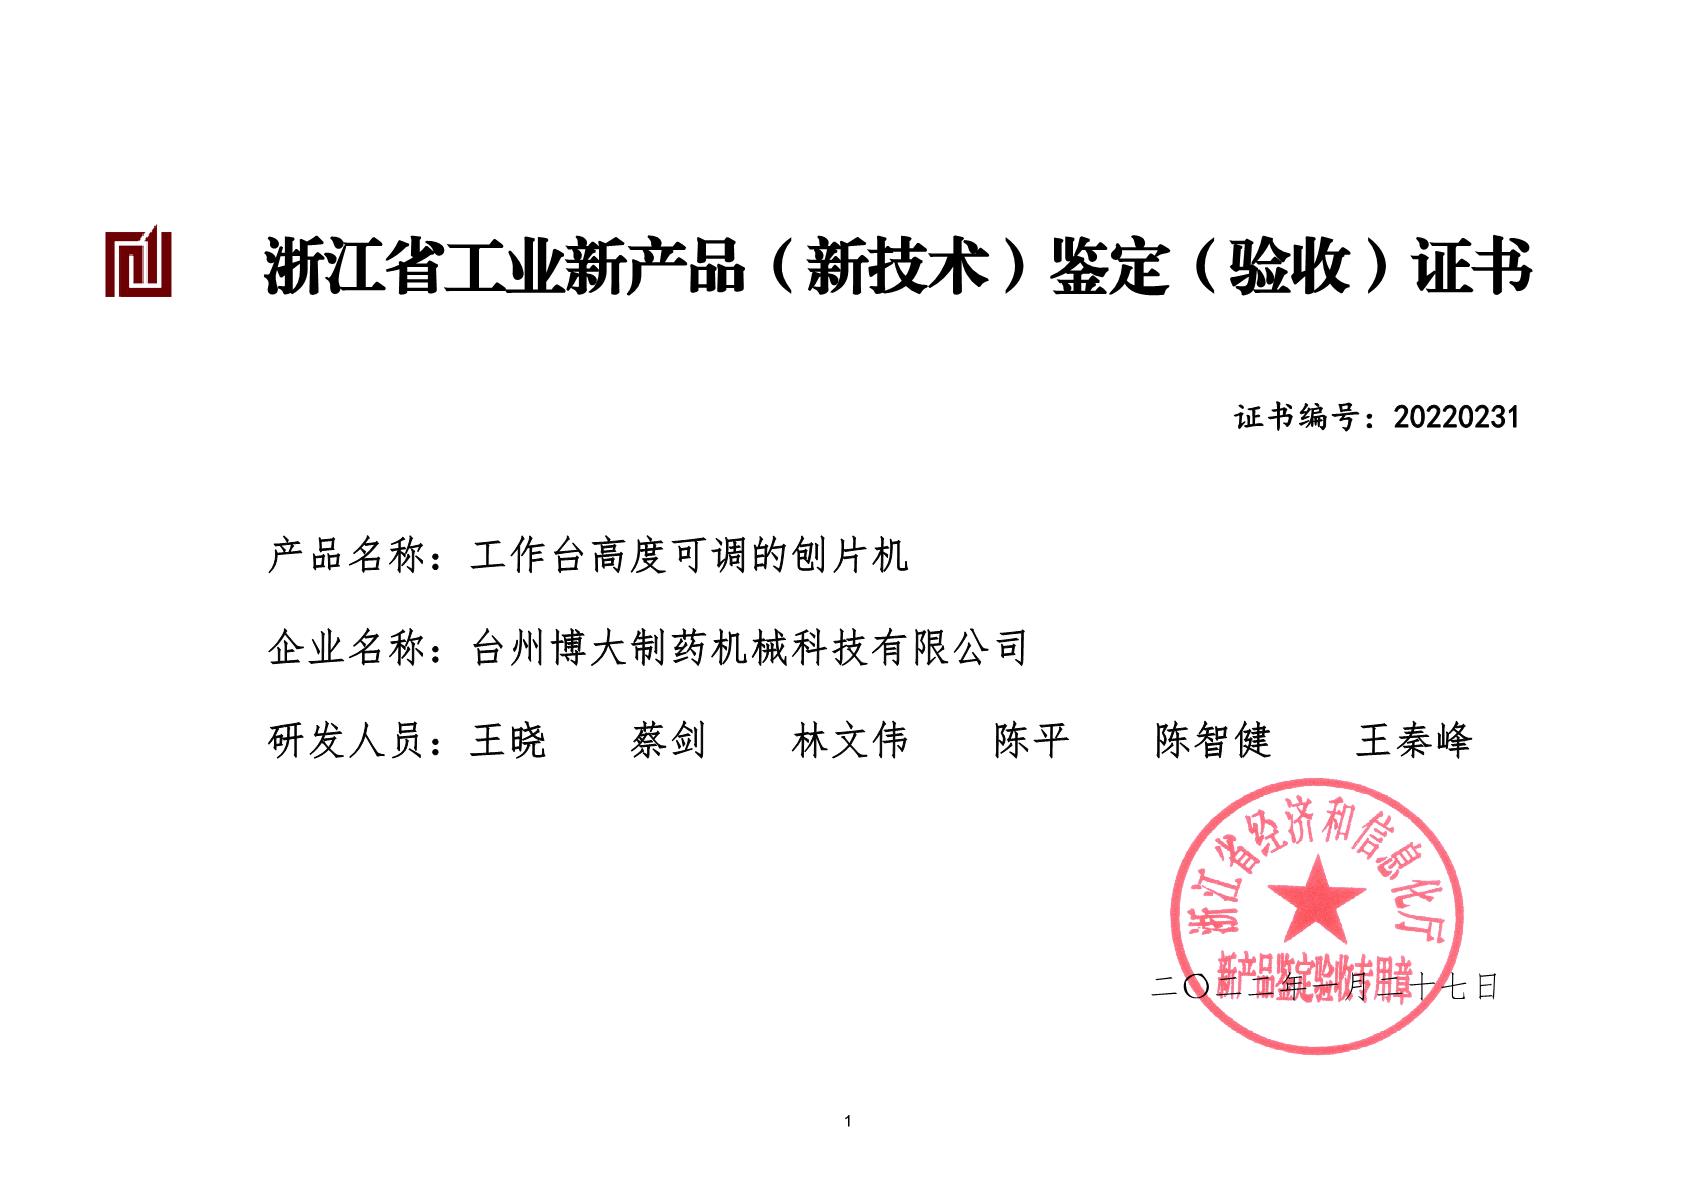 工作台高度可调的刨片机-浙江省工业新产品（新技术）鉴定（验收)证书